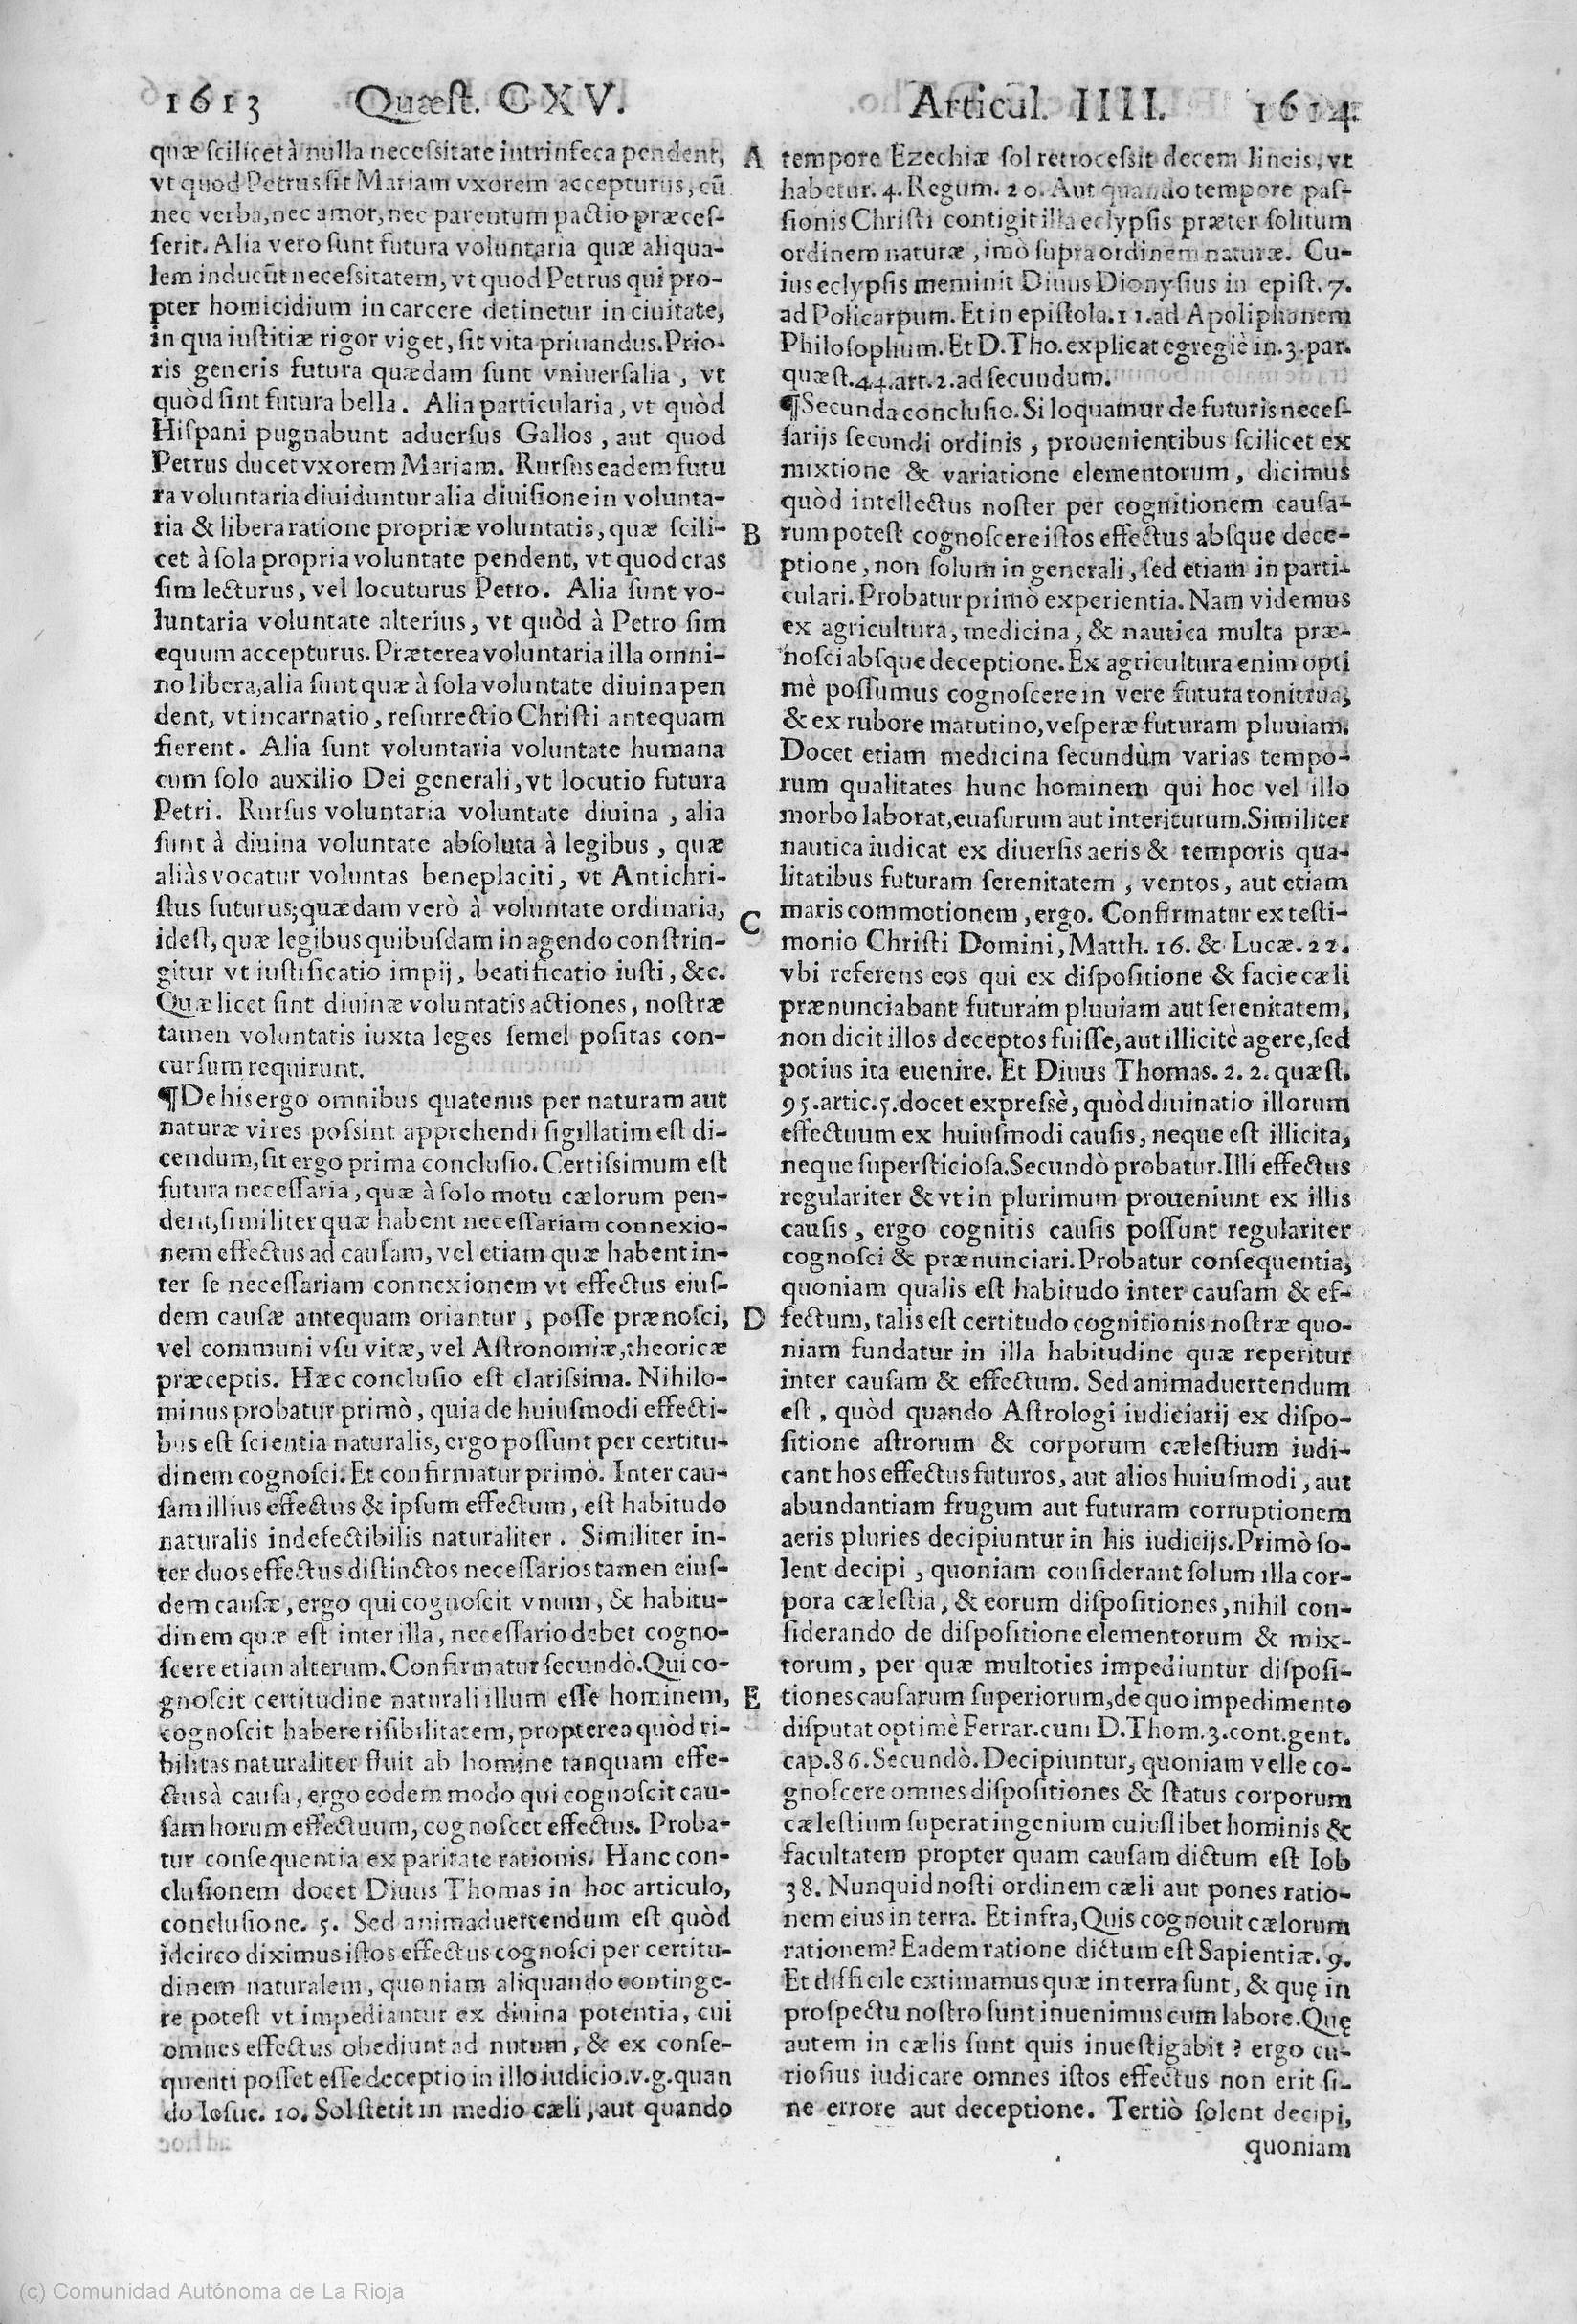 1613-1614